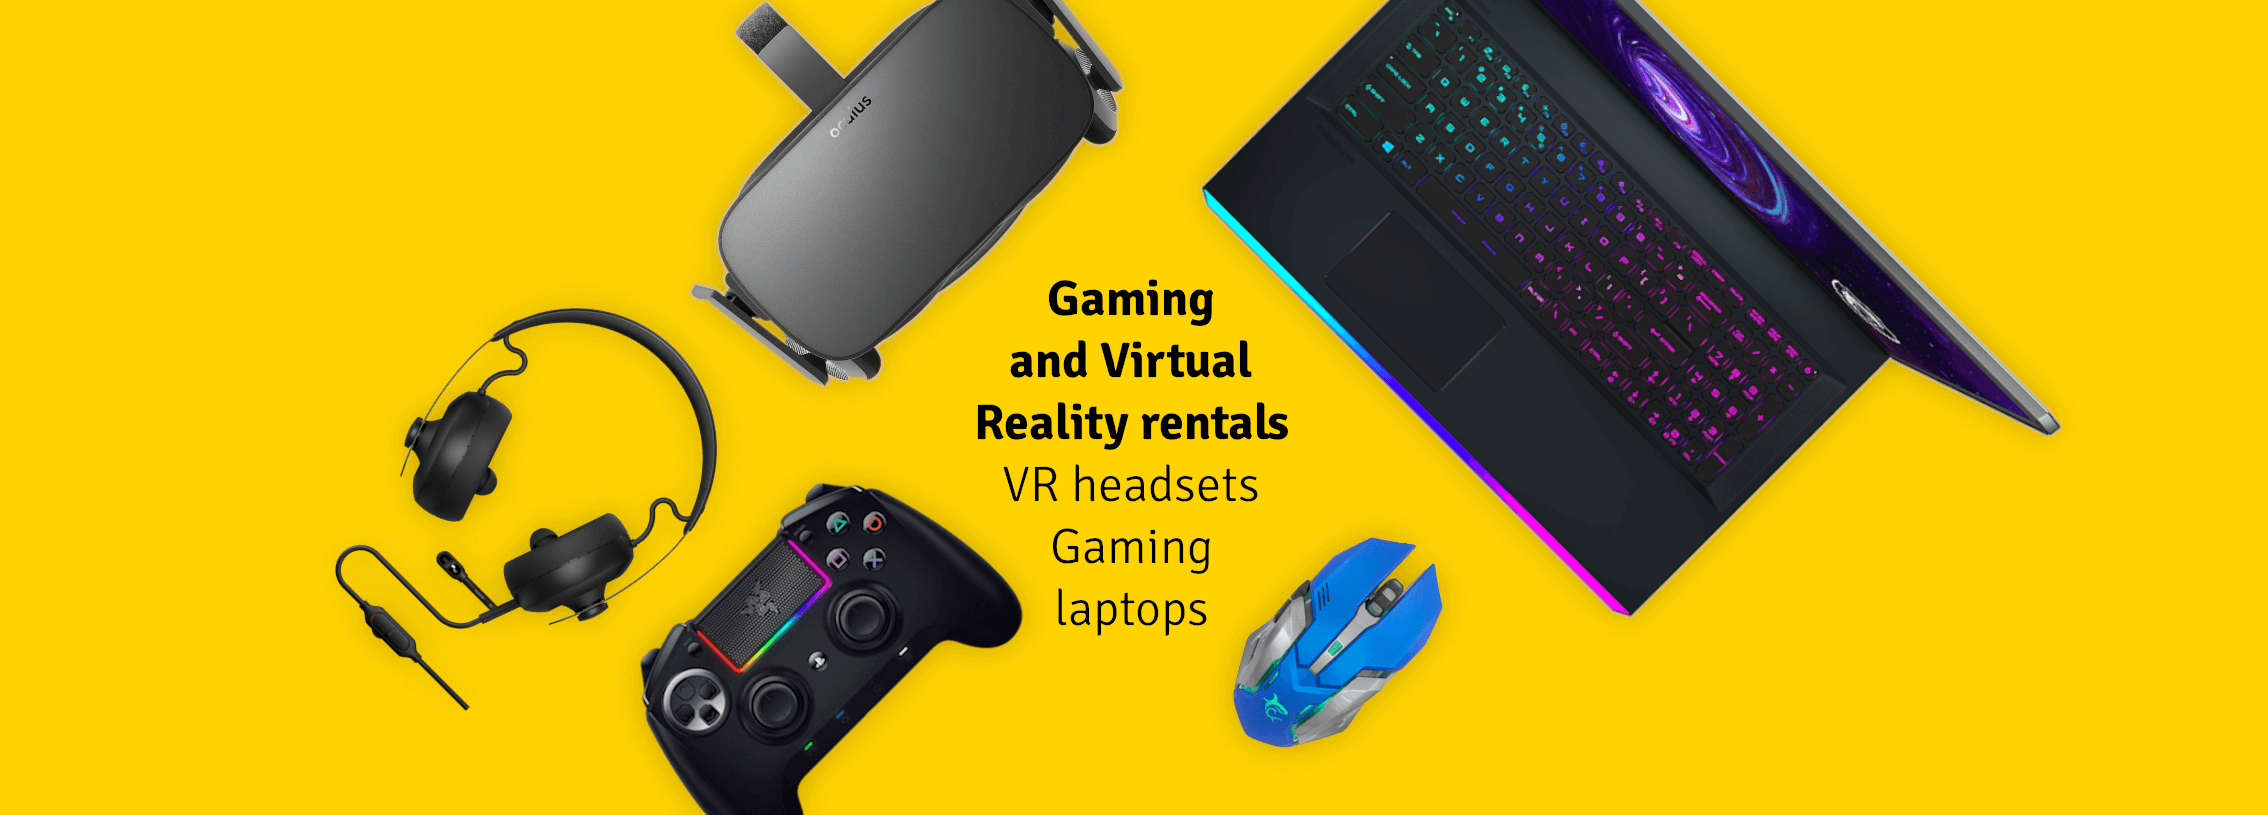 Gafas de Realidad Virtual, Portátiles para gaming